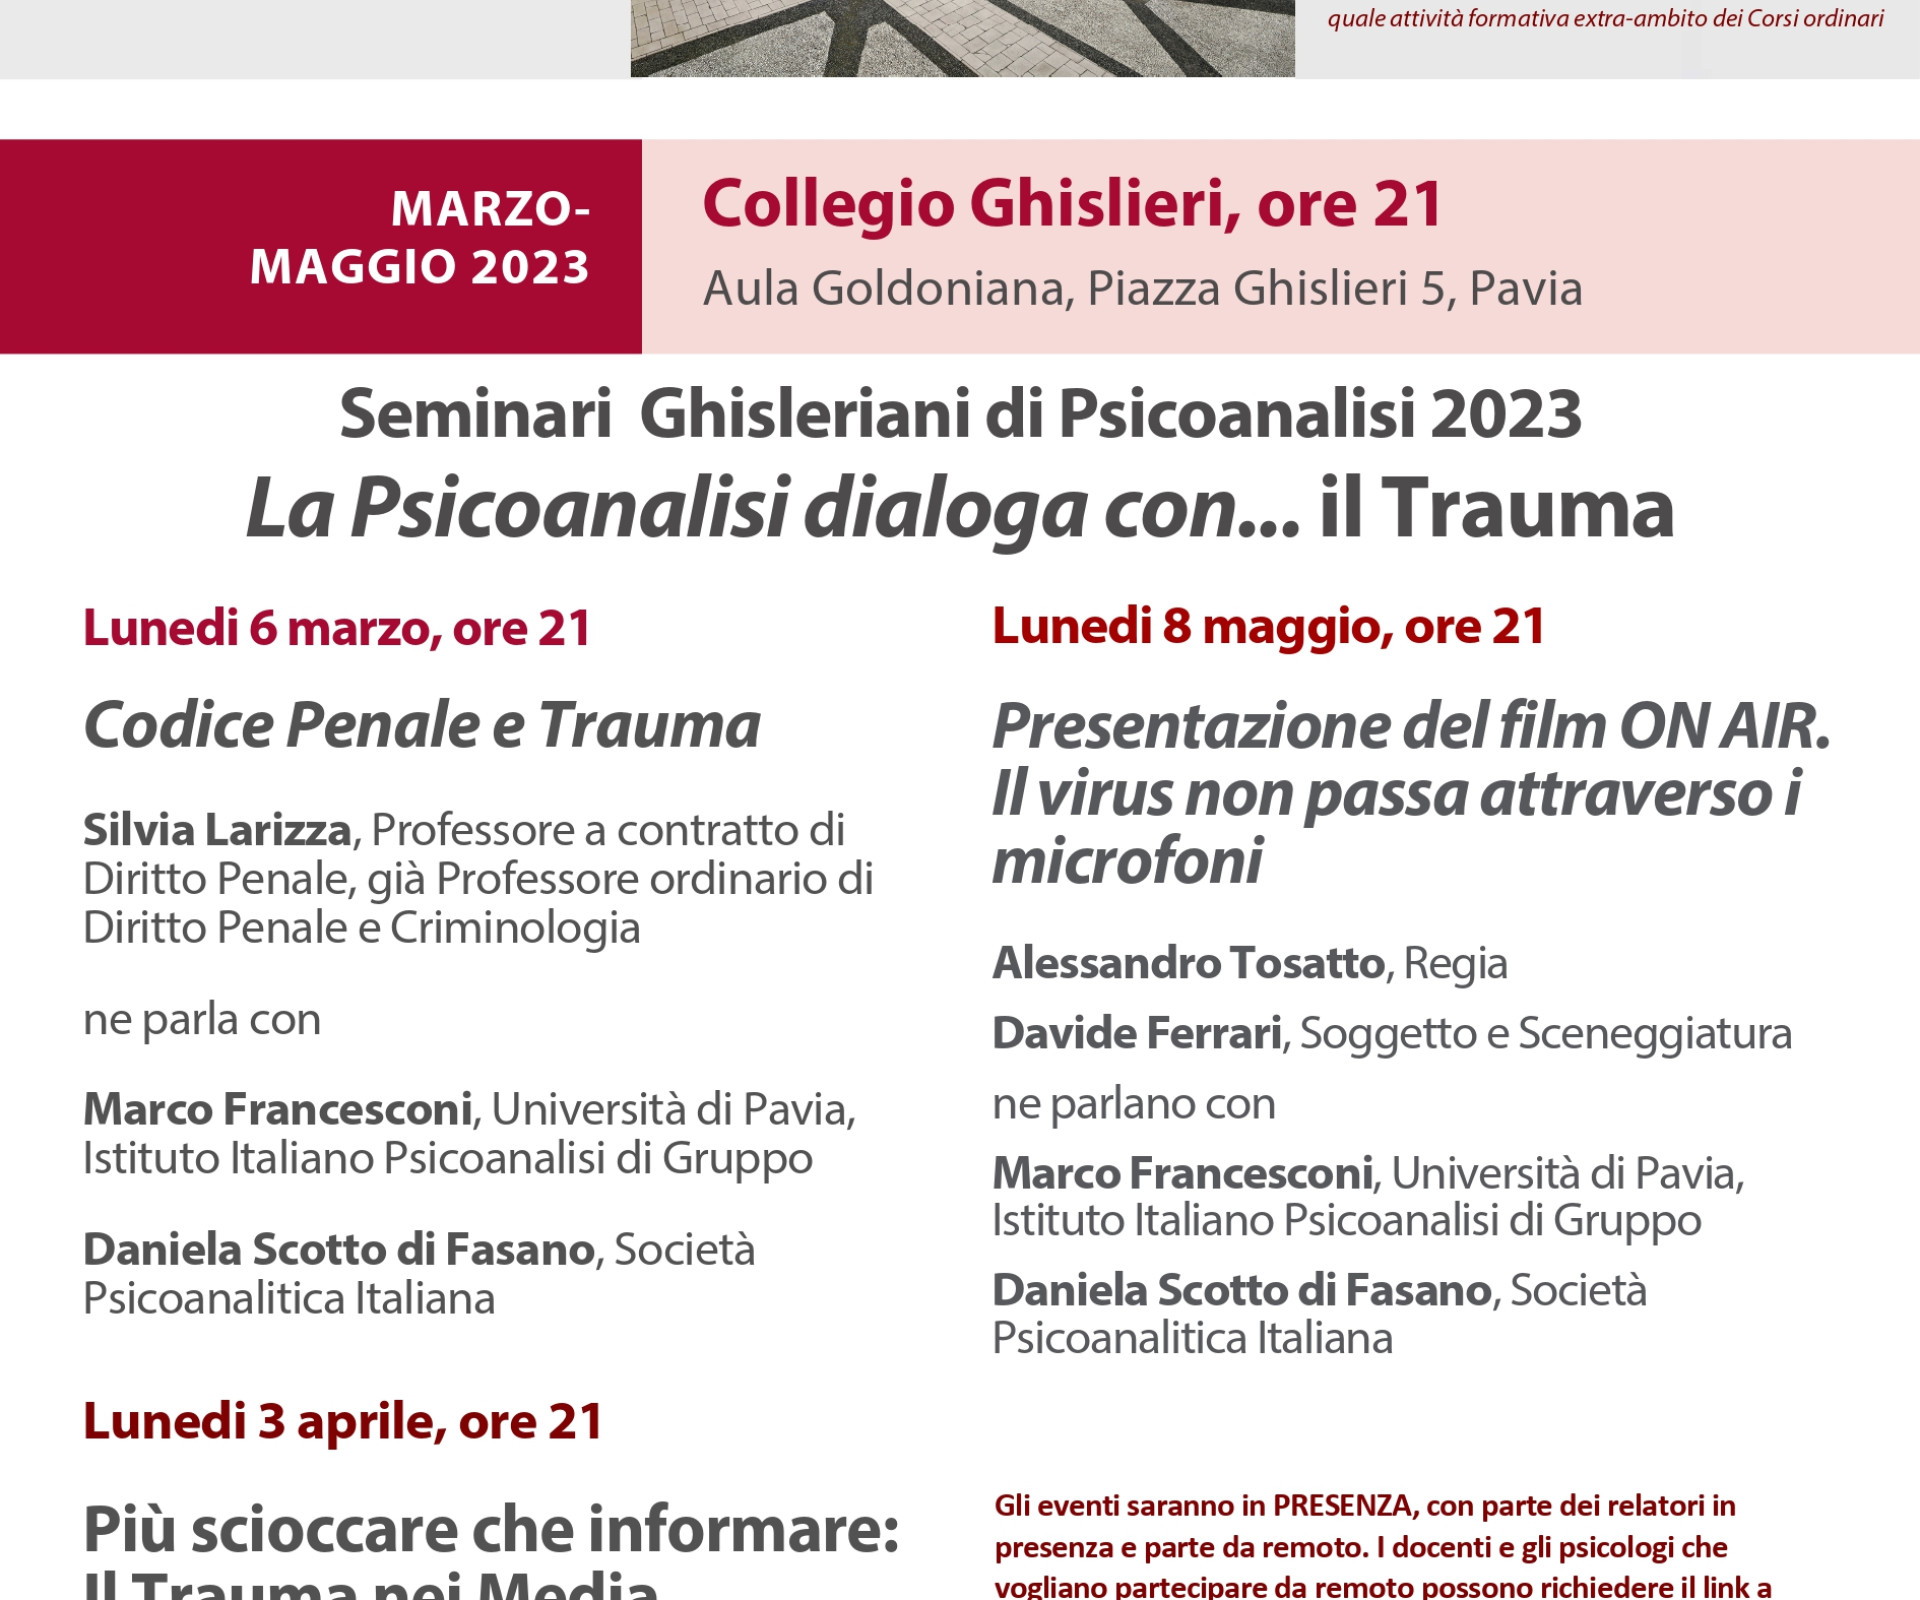 Seminari Ghisleriani di Psicoanalisi 2023 - lunedi 6 marzo h:21